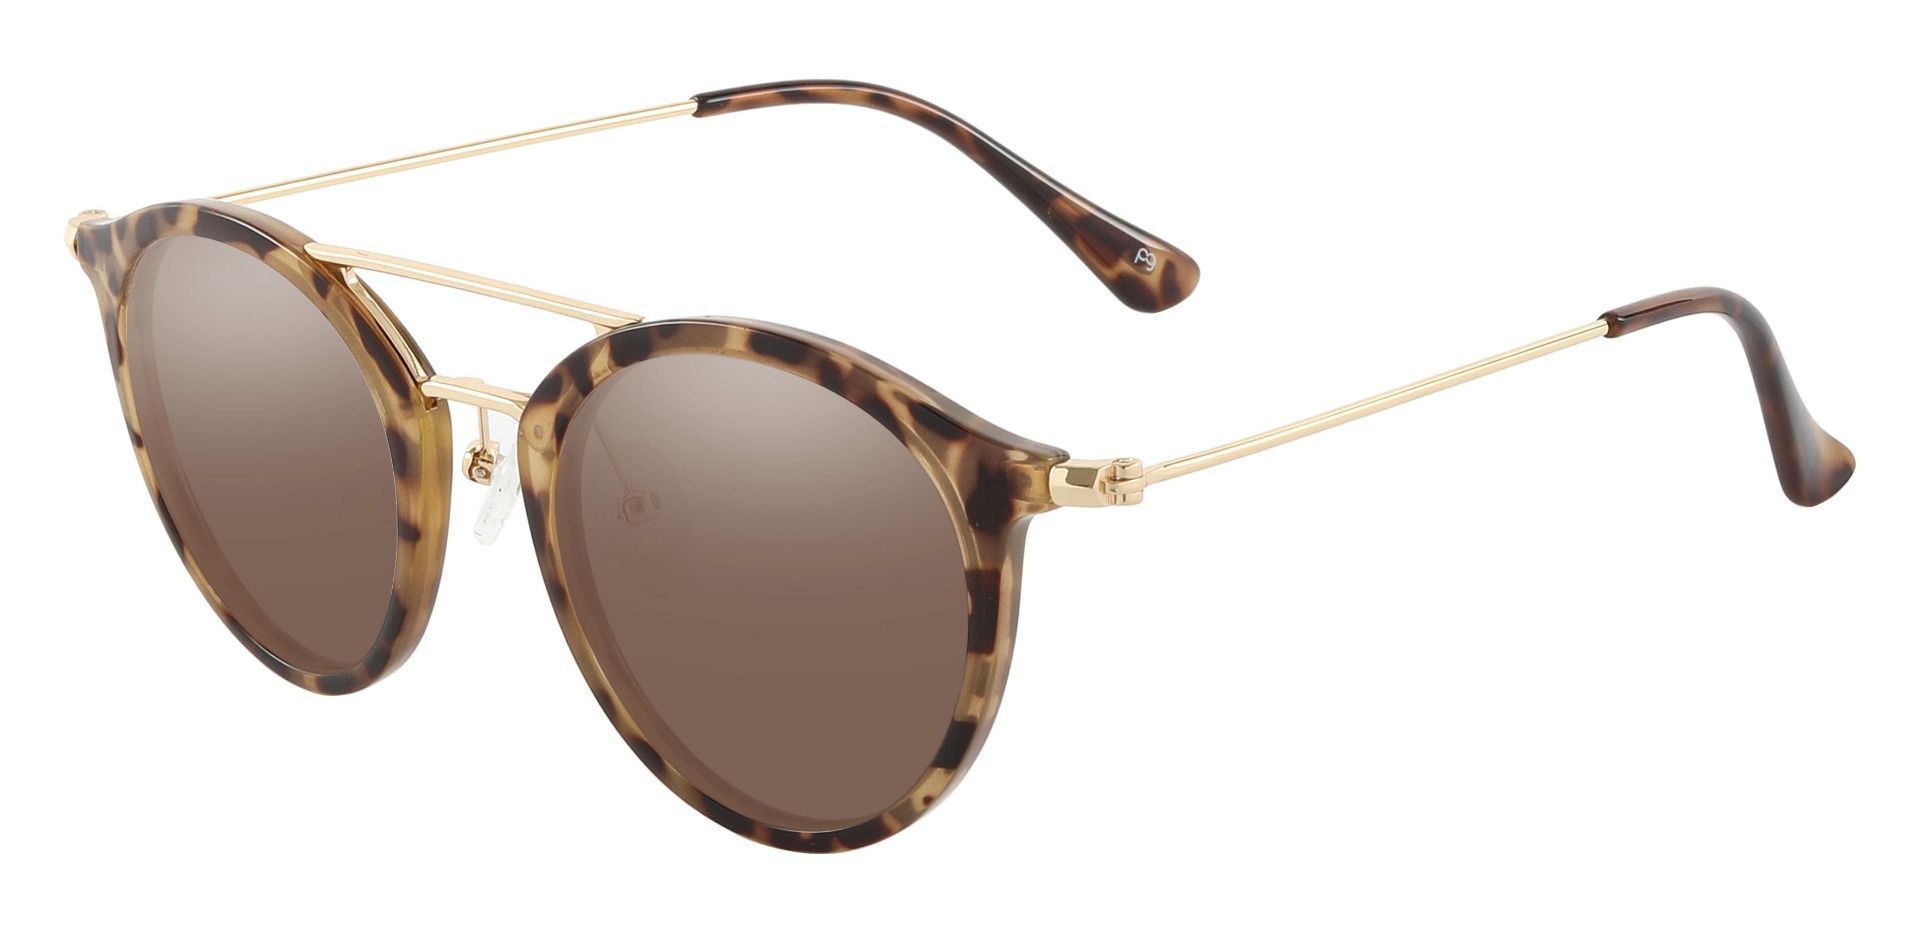 Malden Aviator Prescription Sunglasses - Tortoise Frame With Brown Lenses